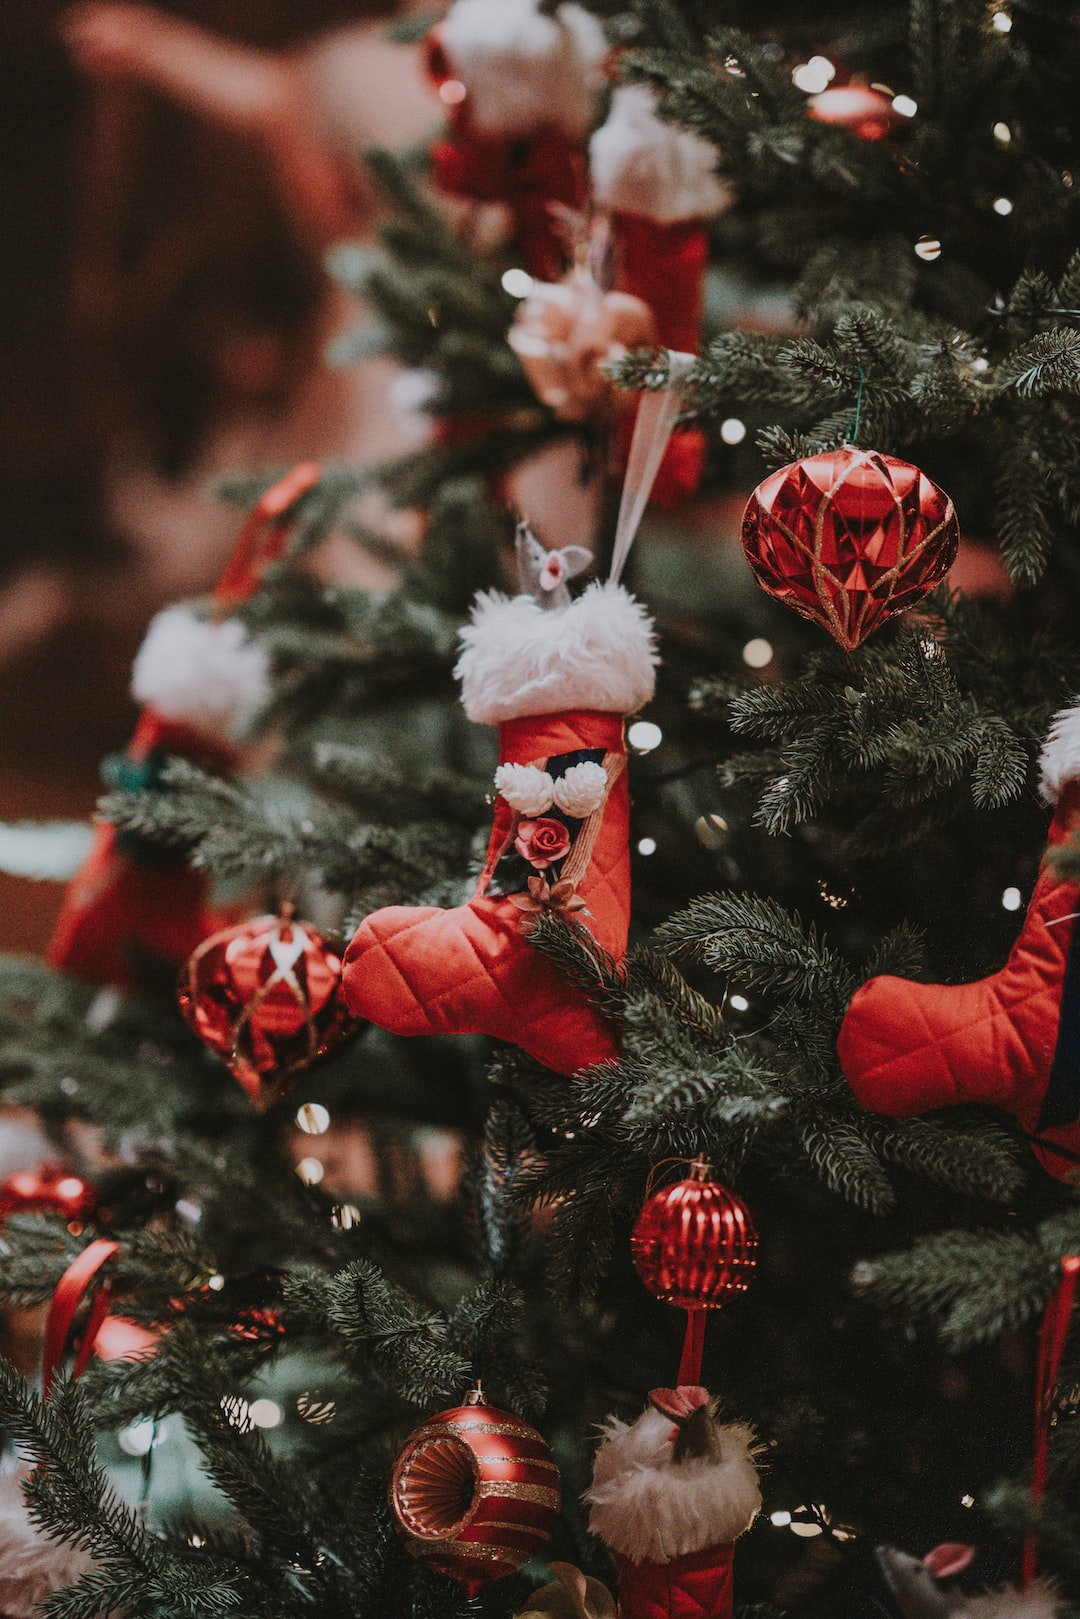 Những hình nền Giáng Sinh sẽ mang đến cho bạn cảm giác ấm áp, tươi vui và thật sự đầy niềm vui. Với nhiều lựa chọn phong phú, hình nền Giáng Sinh sẽ đem đến cho bạn những cảm xúc đáng nhớ trong mùa lễ này. Hãy tận hưởng bầu không khí Giáng Sinh tràn đầy niềm vui!